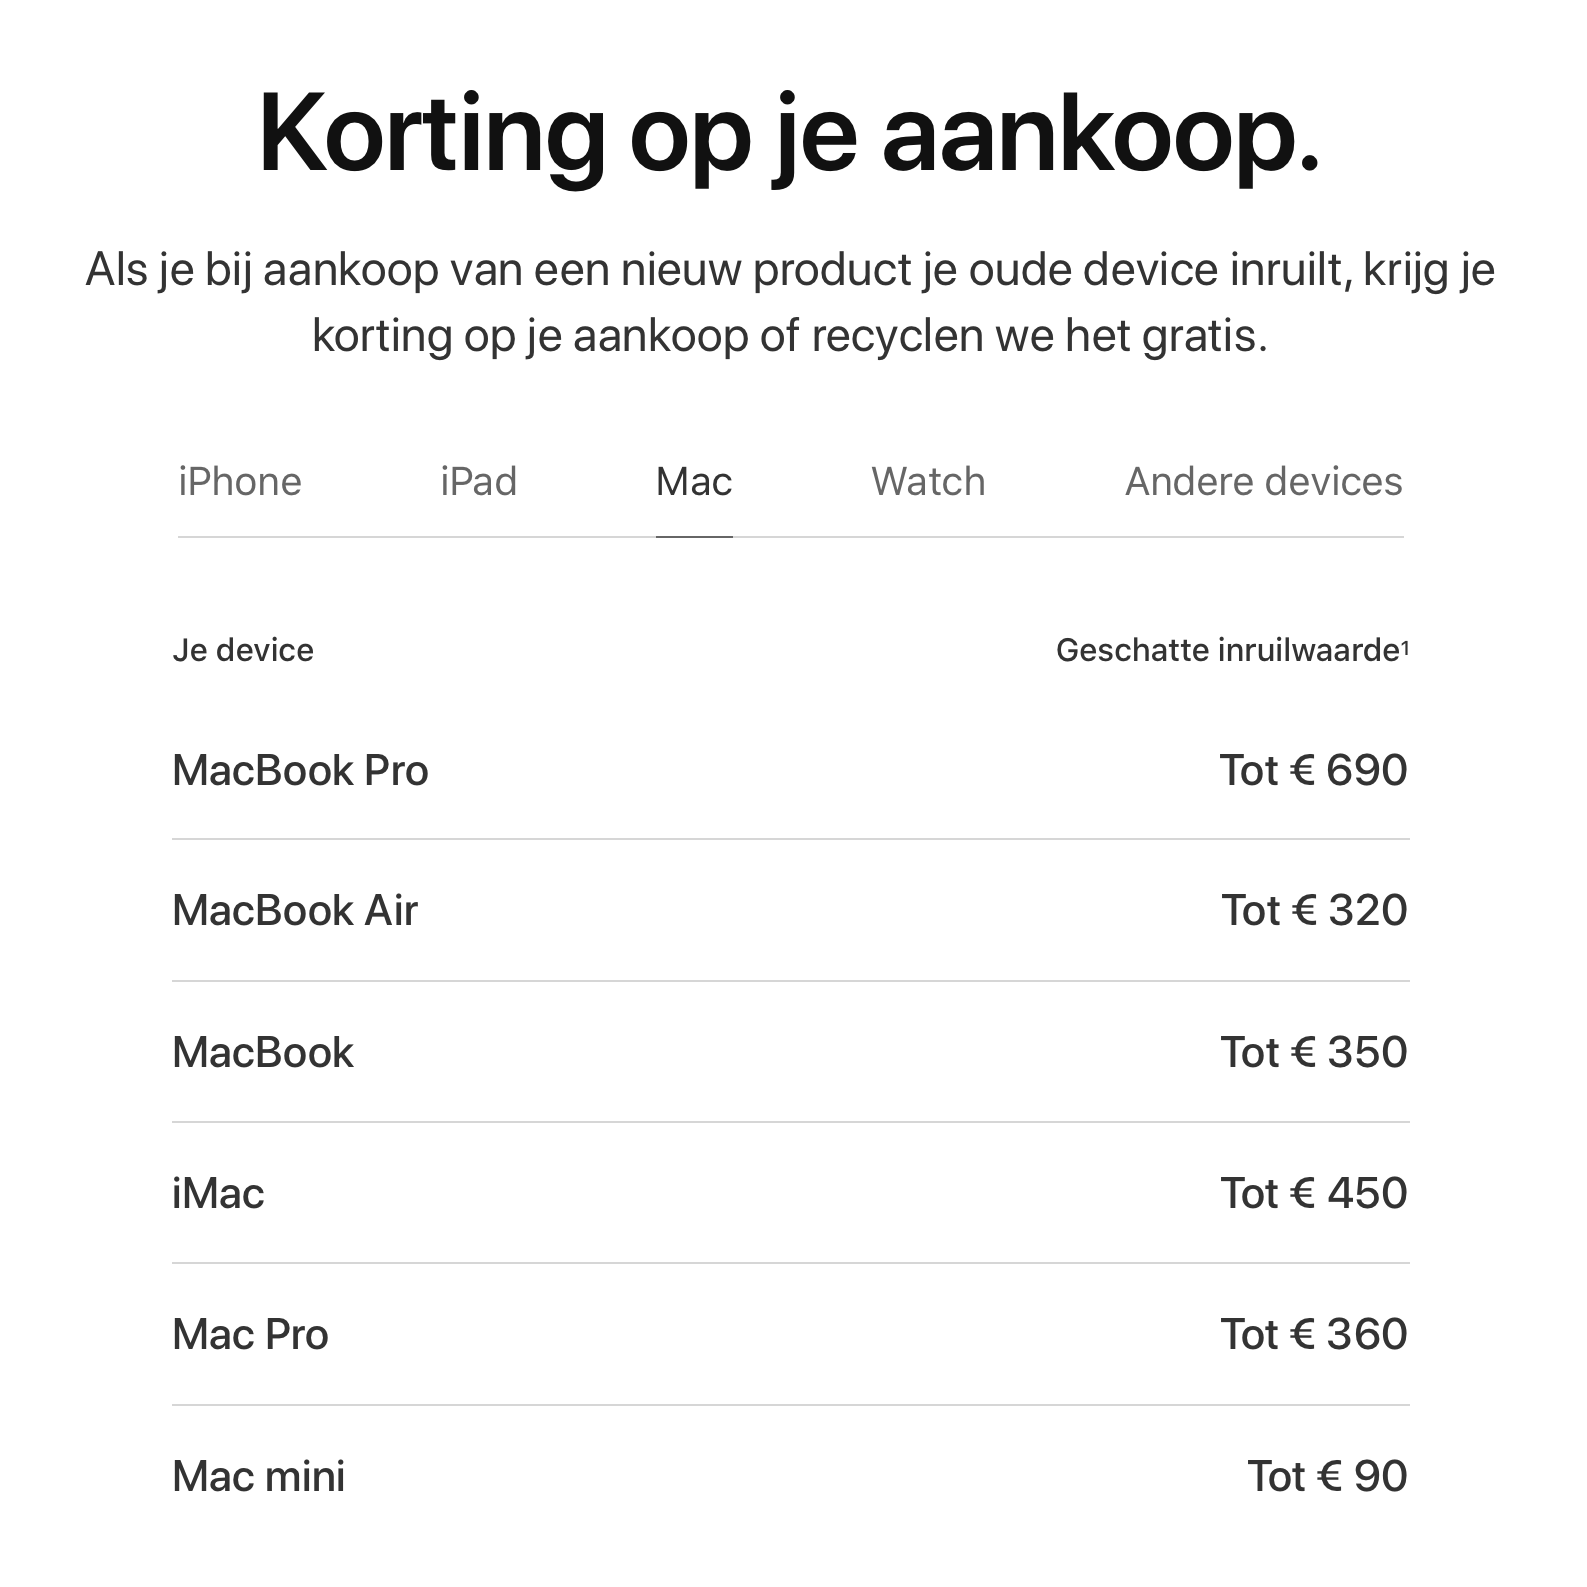 https://www.macfreak.nl/modules/news/images/zArt.AppleTradeInNieuwePrijzen.png